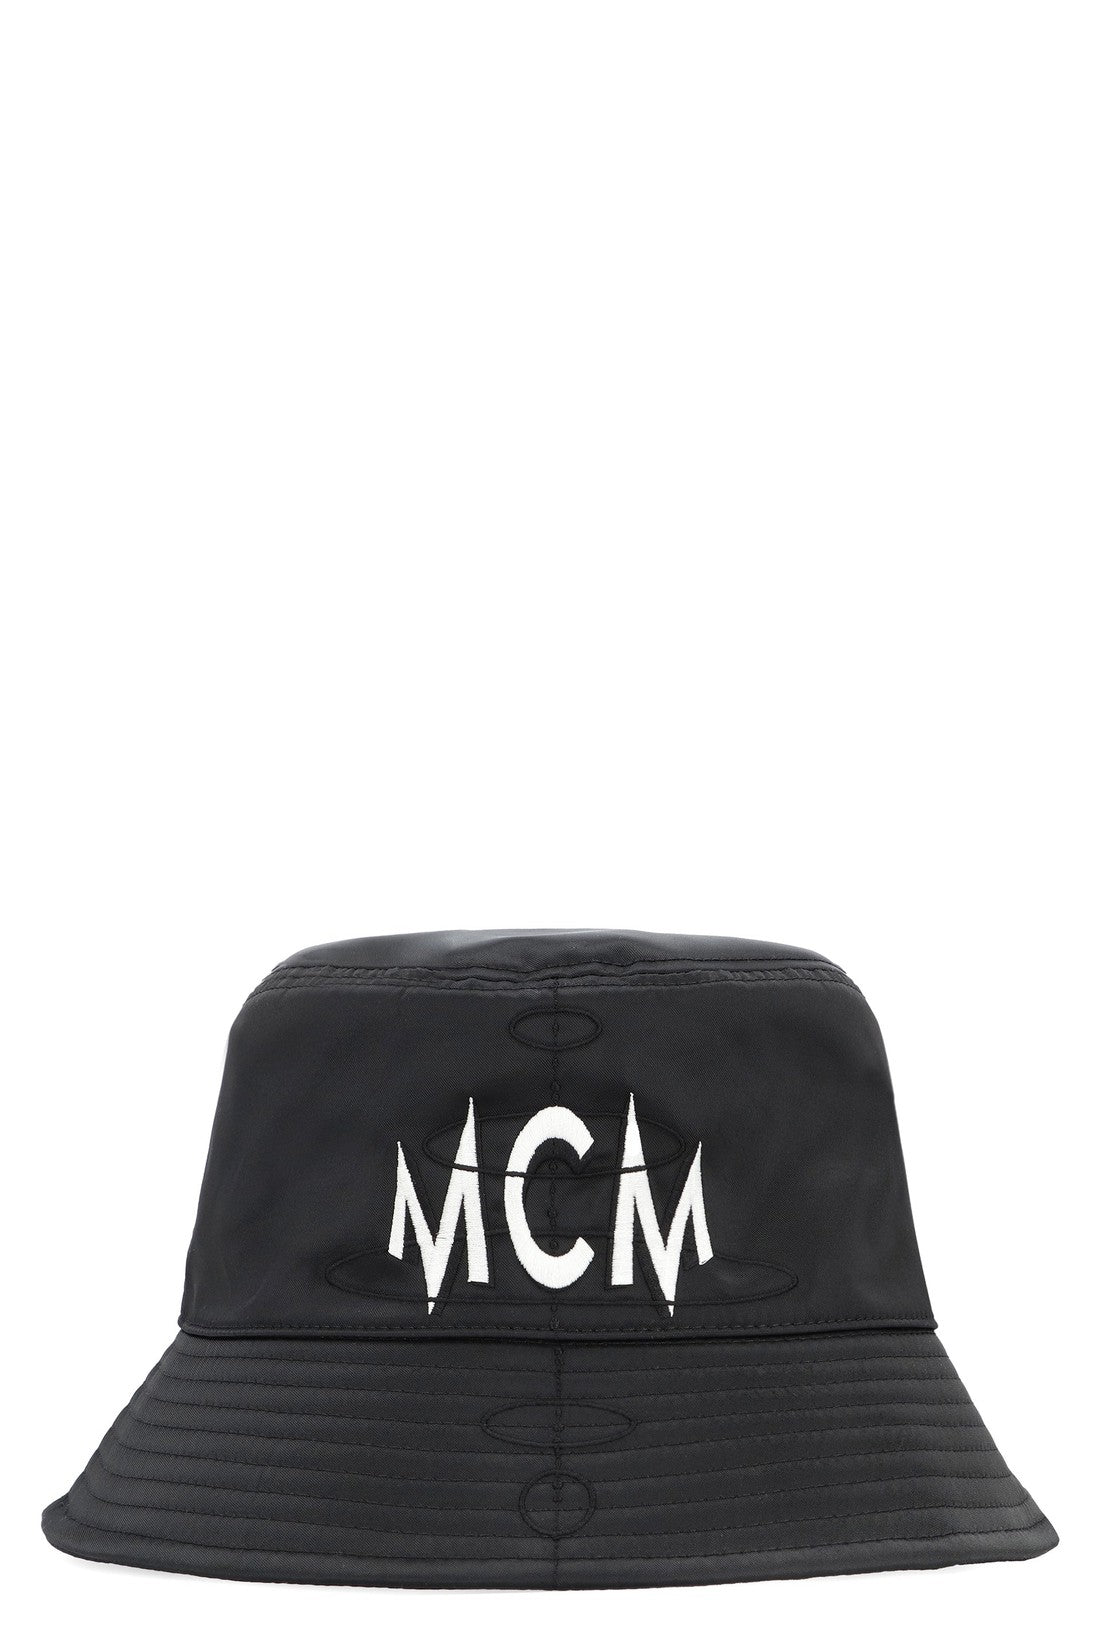 MCM-OUTLET-SALE-Bucket hat-ARCHIVIST